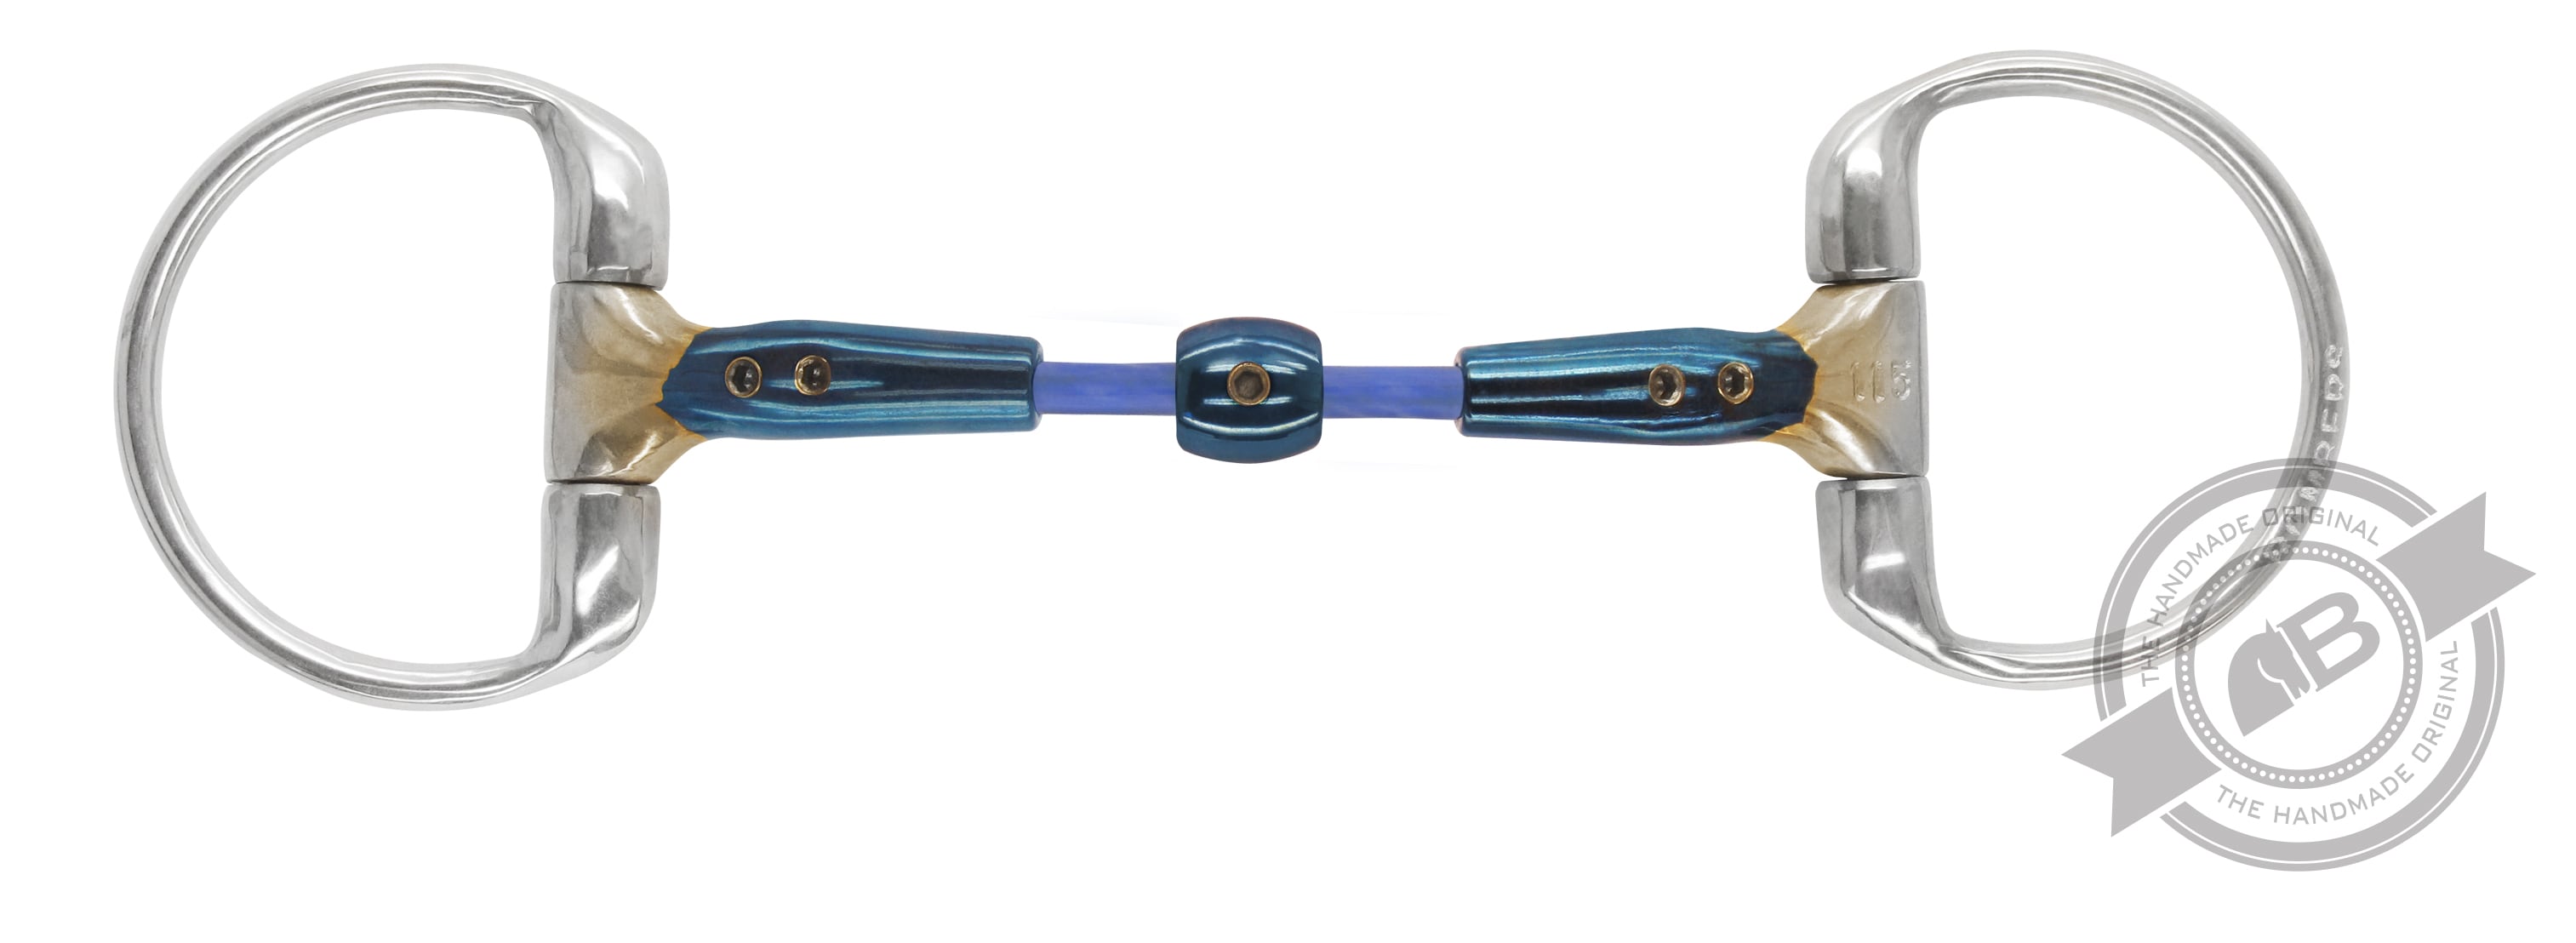 Eggbutt Elliptical Cable - 14 mm